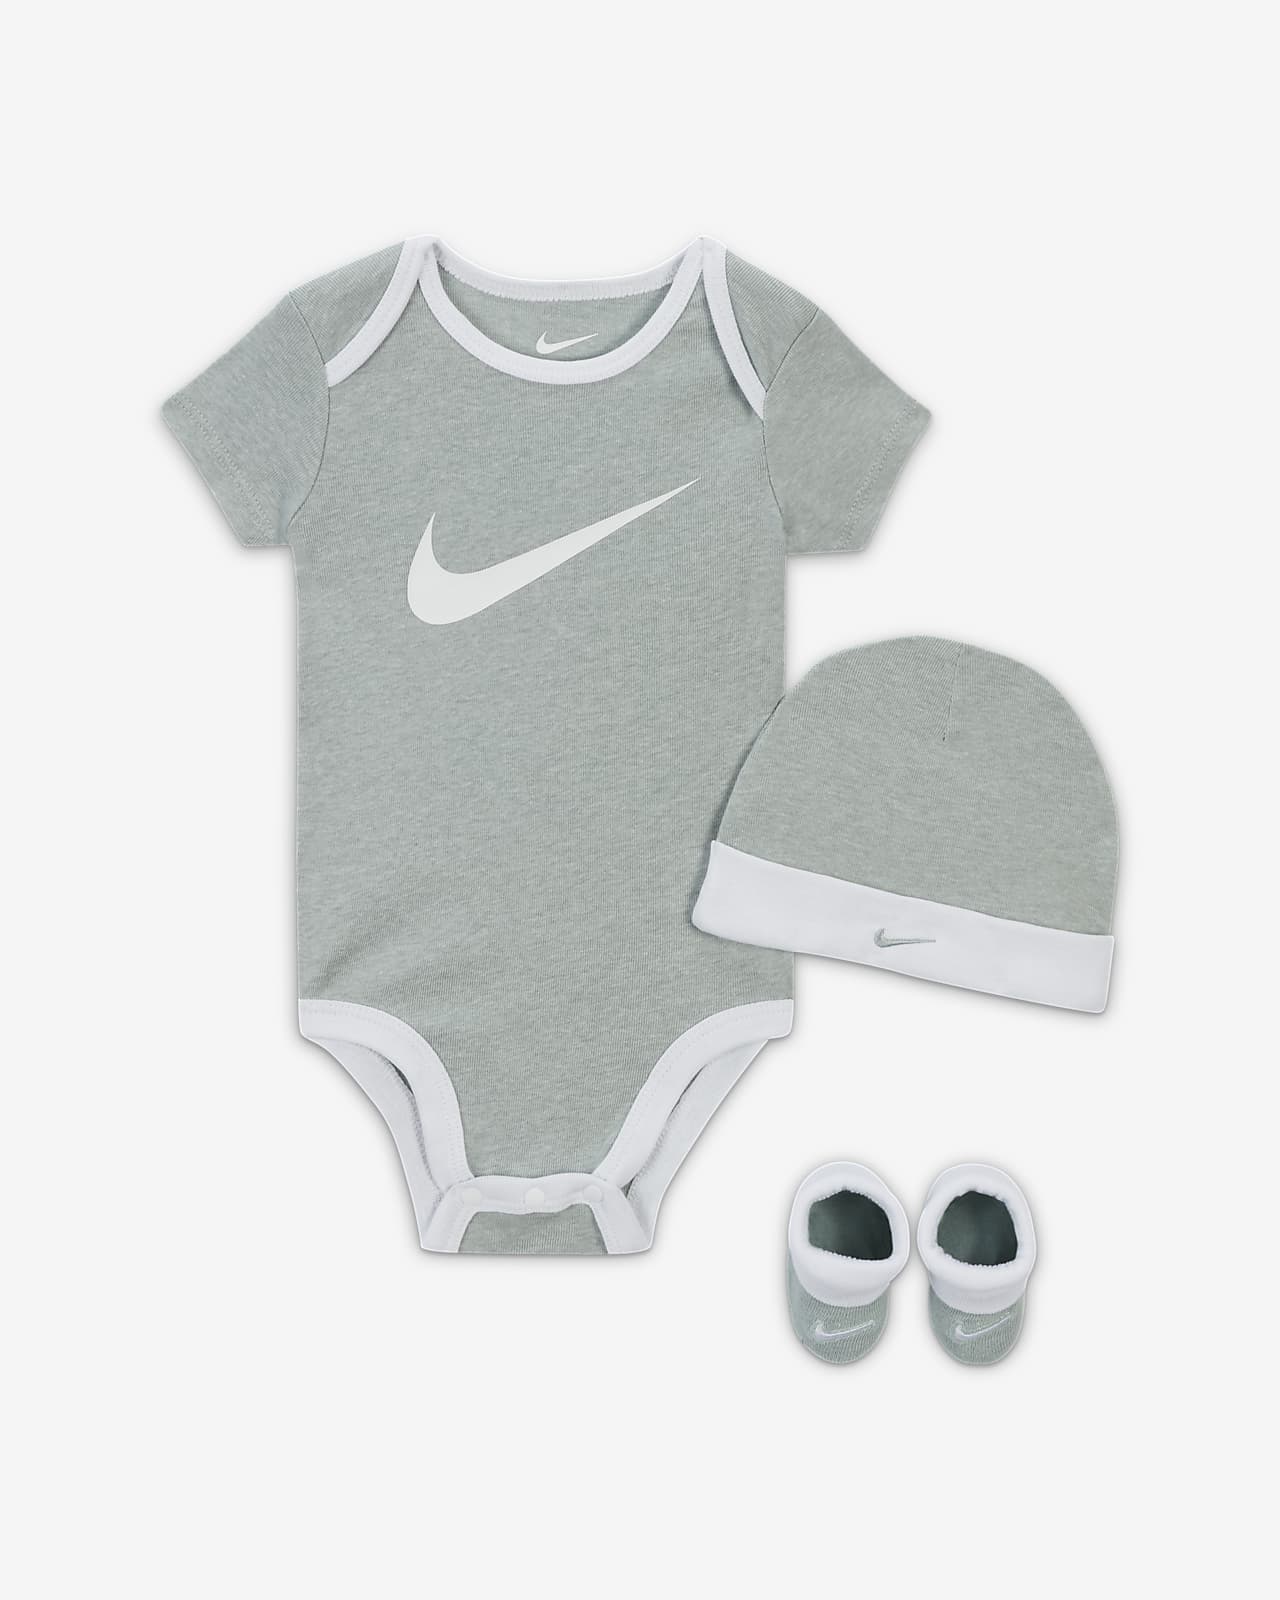 Aanzienlijk hulp in de huishouding viool Nike Baby (6-12M) Bodysuit, Hat and Booties Box Set. Nike.com